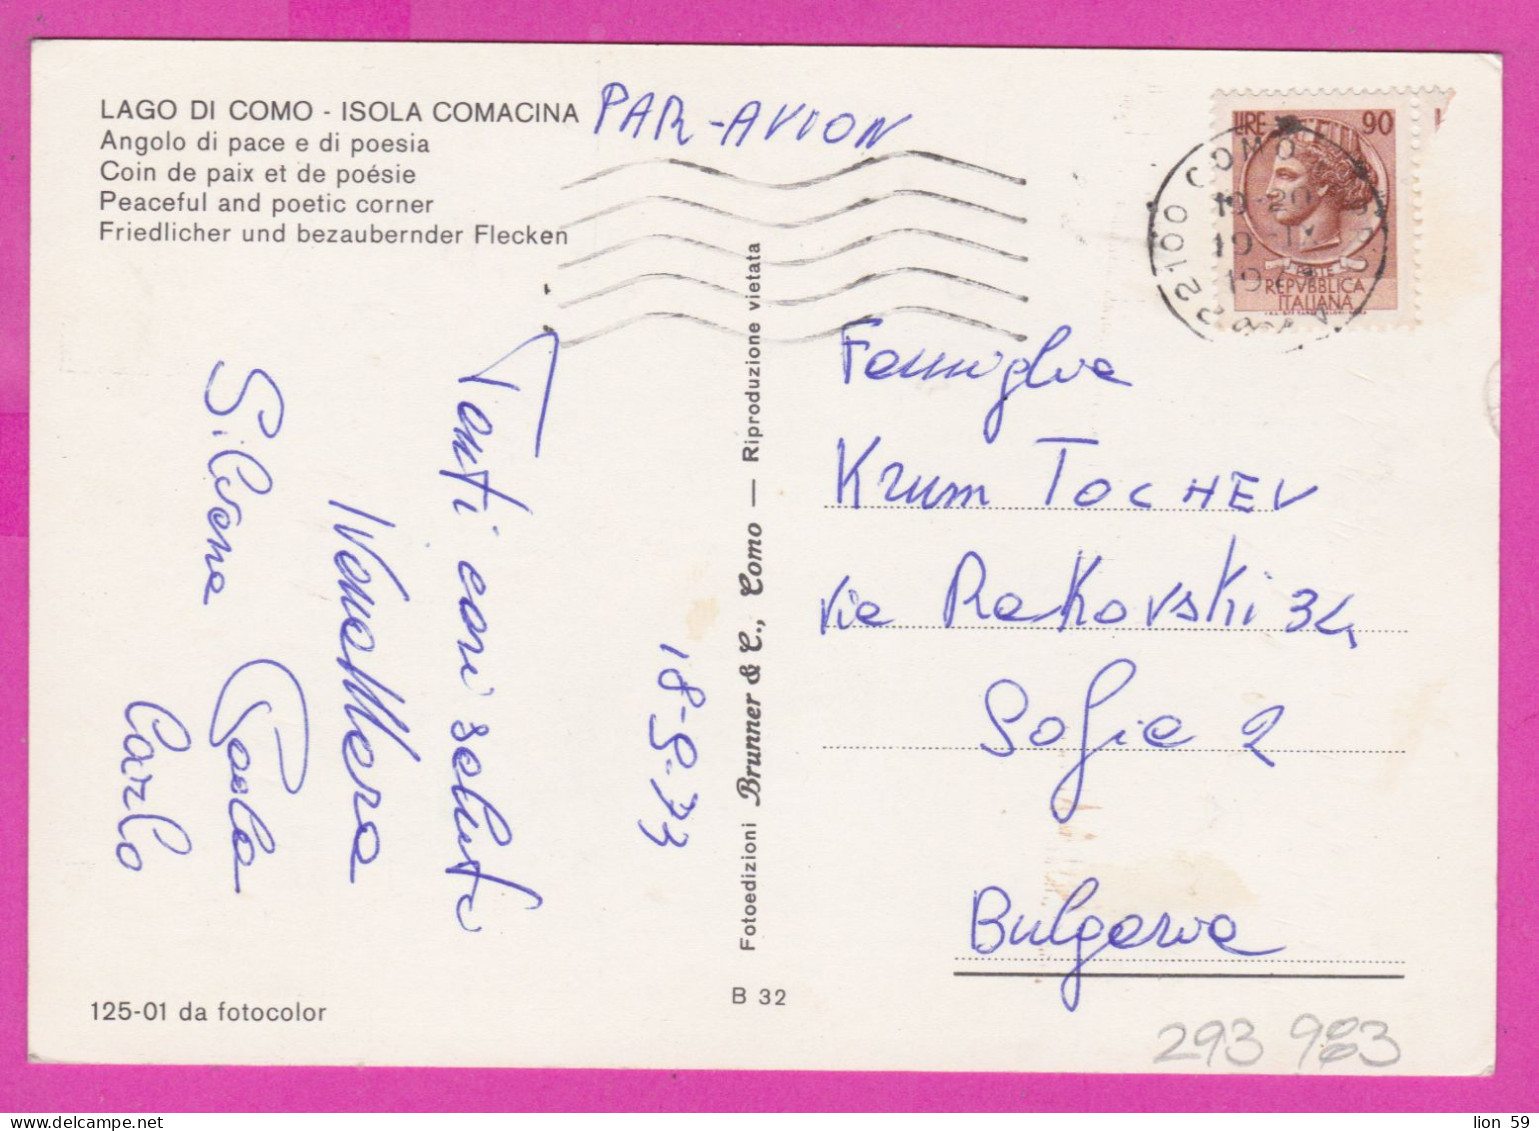 293983 / Italy - LAGO DI COMO - Isola Comacina , Angolo Di Pace E Di Poesia PC 1973 USED 90 L Coin Of Syracuse - 1971-80: Marcofilie